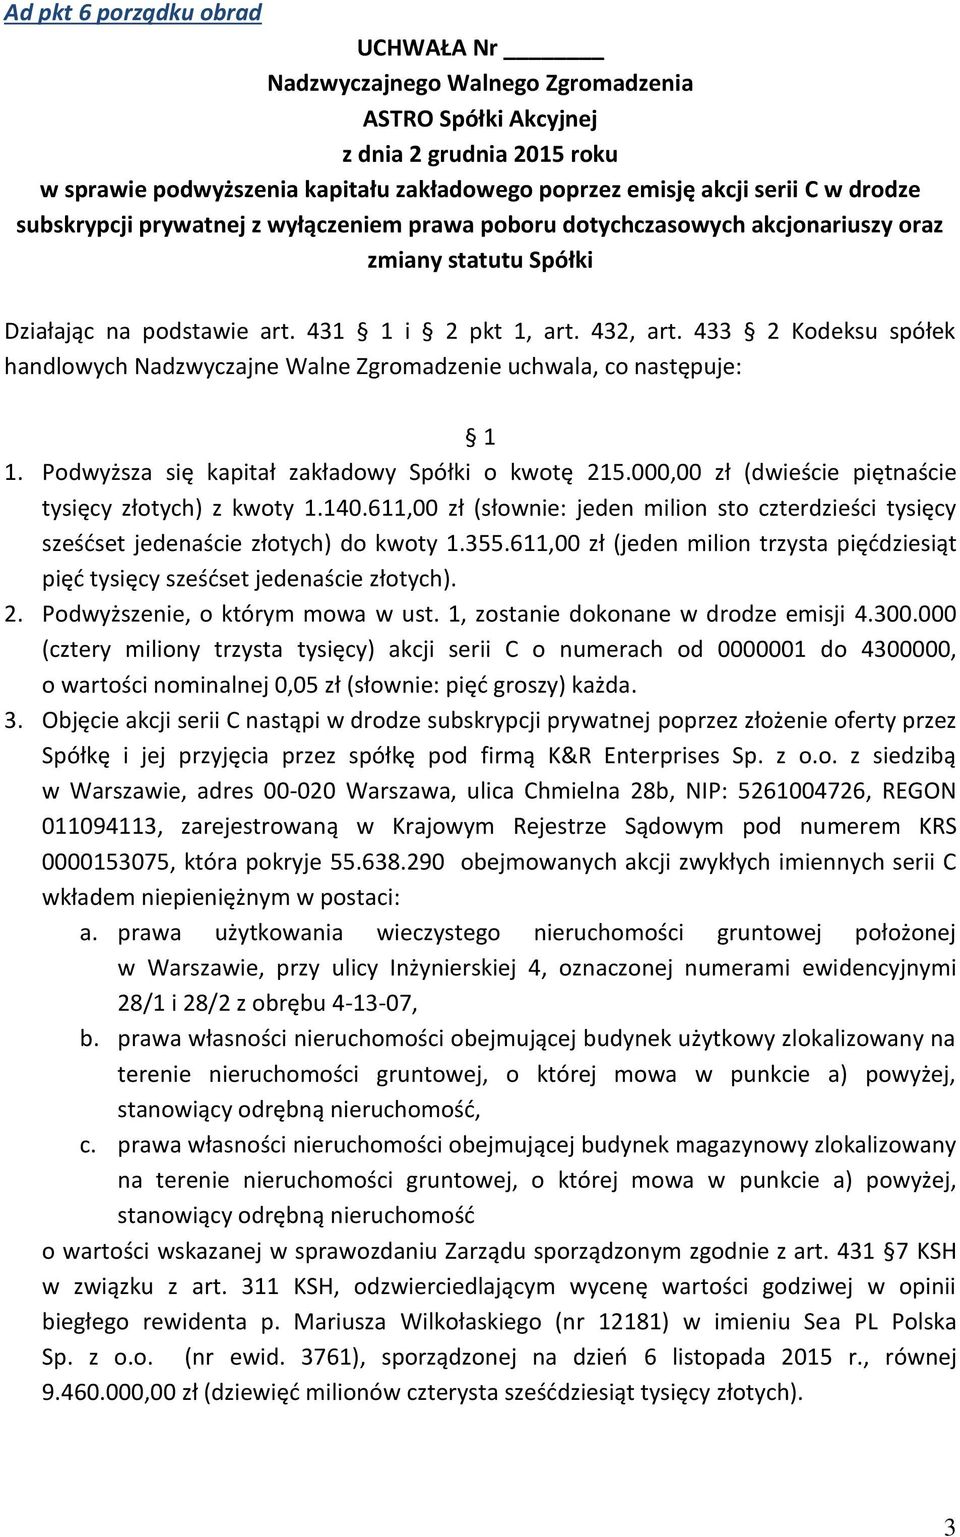 Podwyższa się kapitał zakładowy Spółki o kwotę 215.000,00 zł (dwieście piętnaście tysięcy złotych) z kwoty 1.140.